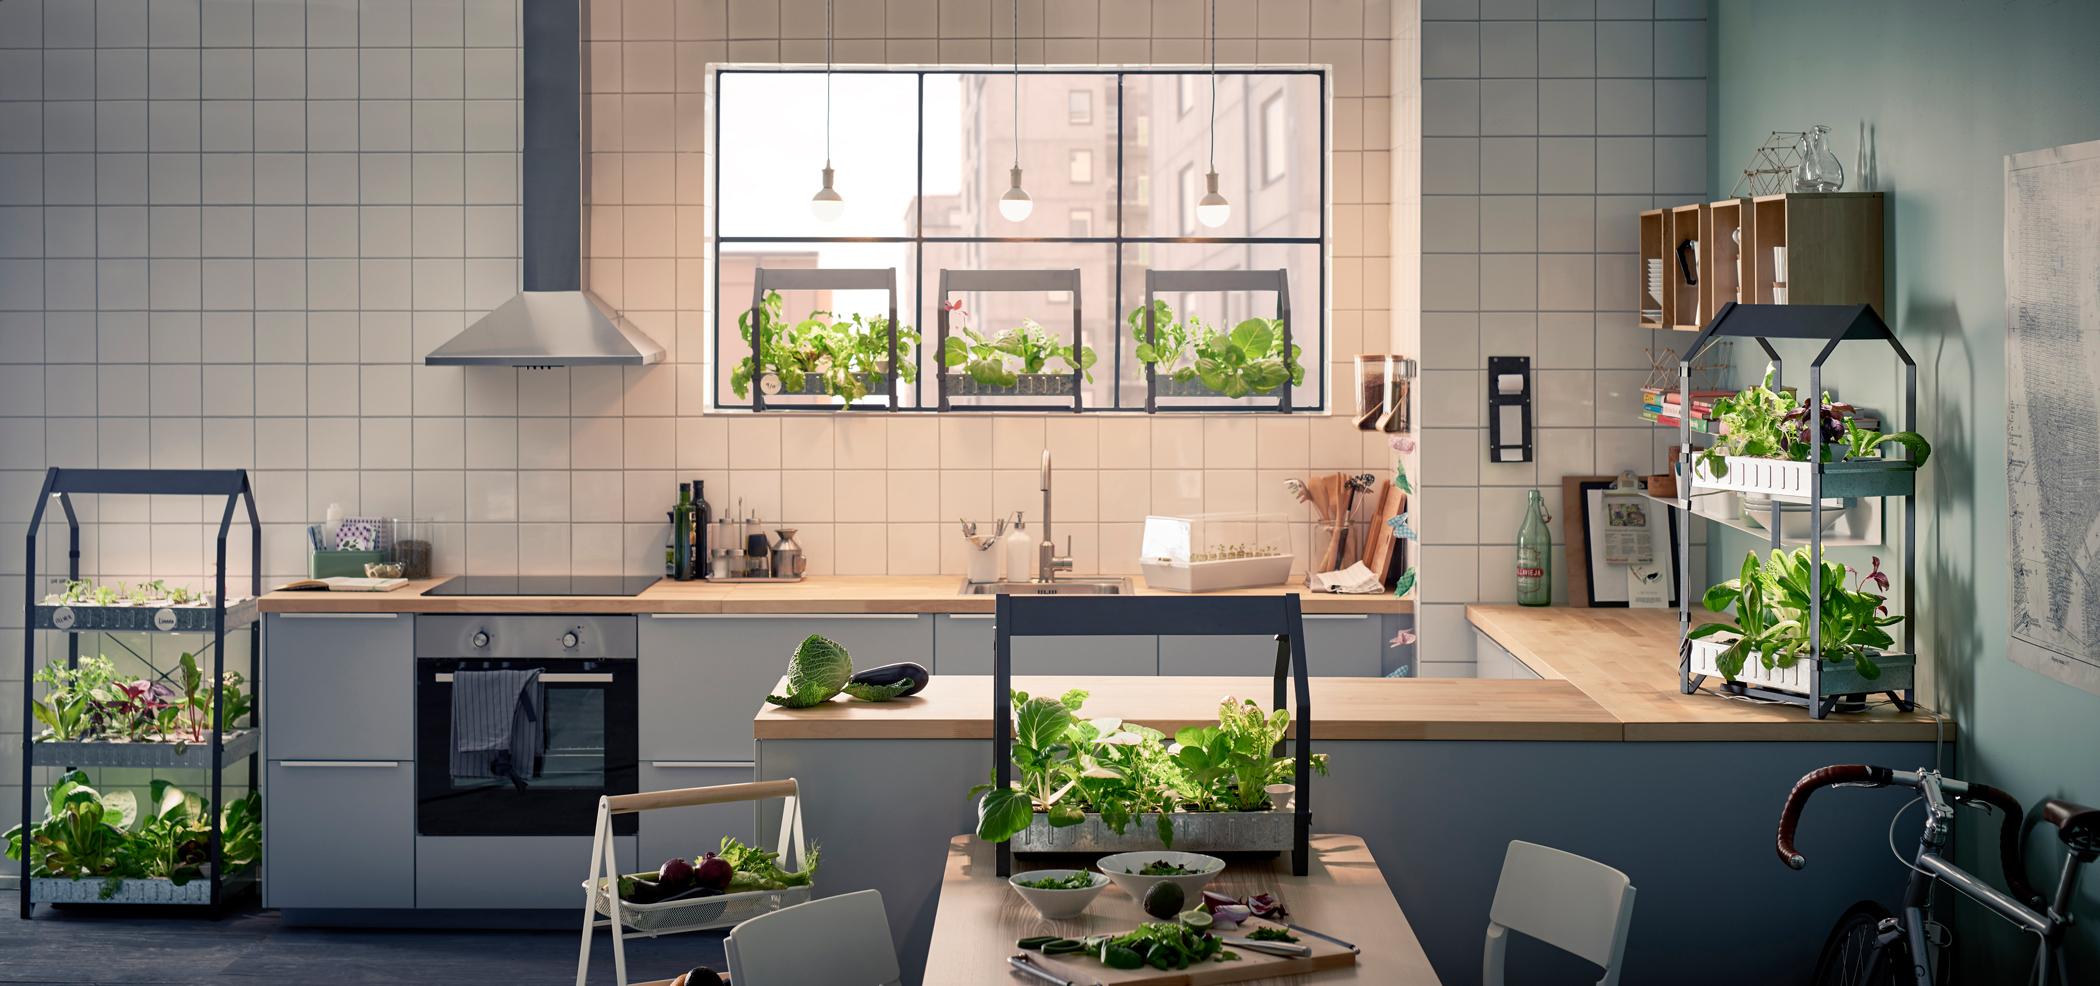 Küche mit modernen Elementen #stuhl #esstisch #ikea #weißerstuhl #zimmerpflanze #zimmergestaltung ©Inter IKEA Systems B.V.